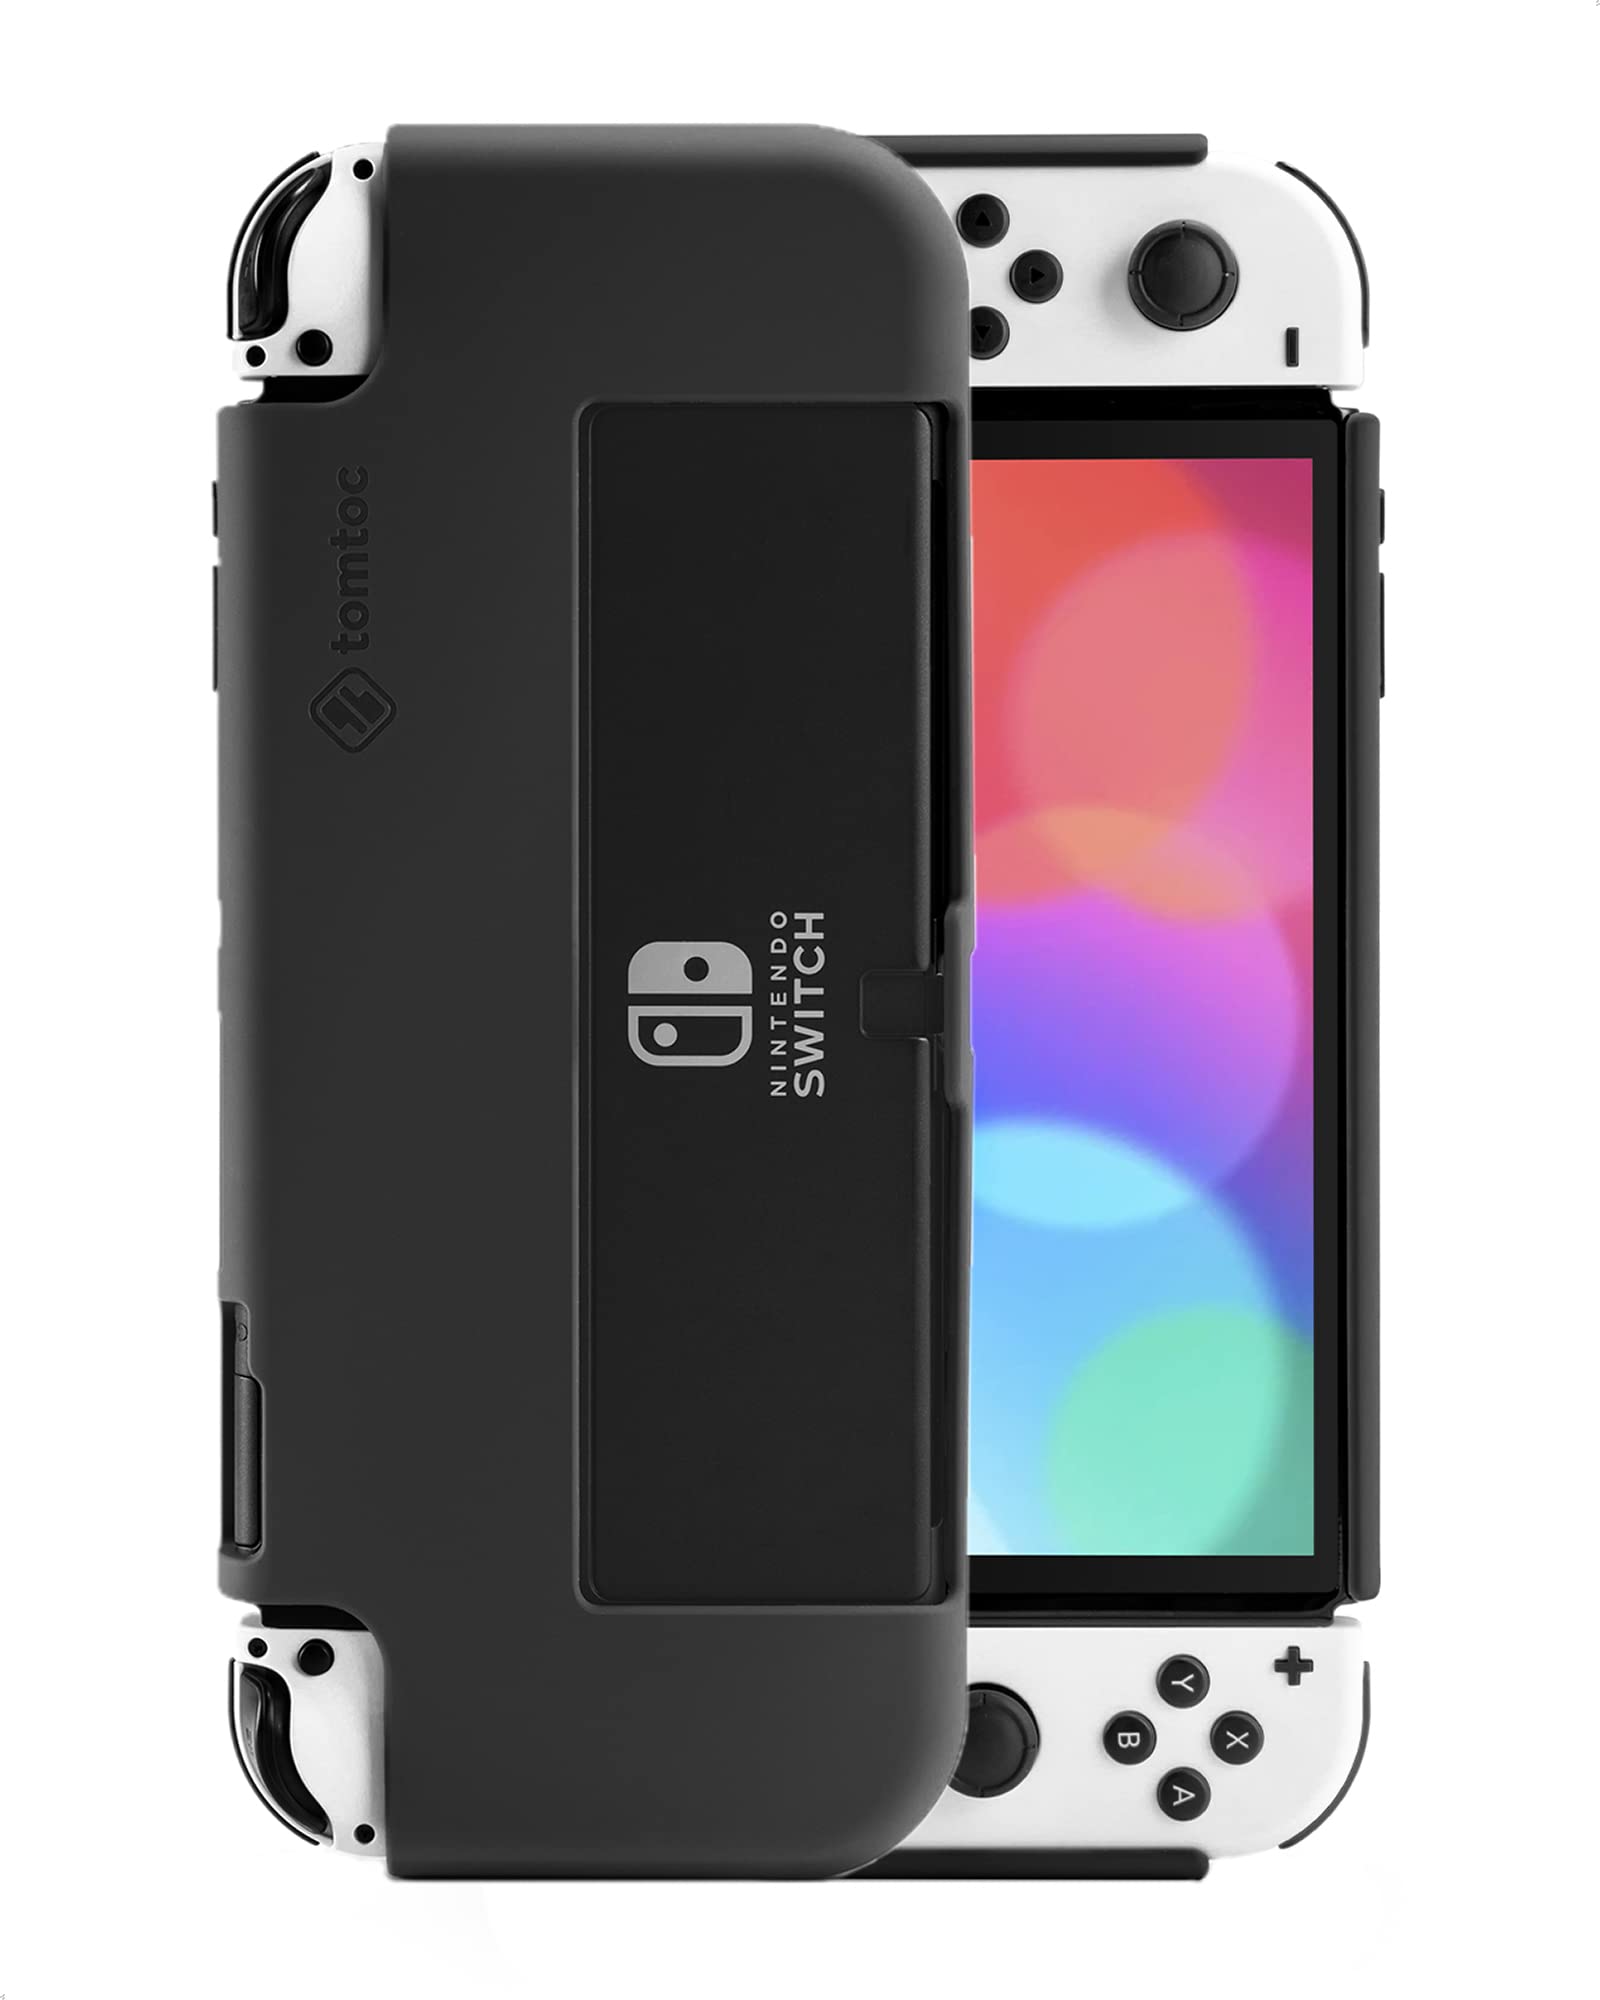 対応機種：Nintendo Switch 有機ELモデル専用。 全てのボタン・ポートが問題なく使えるシリコンカバーです。本商品が装着されたままでも、ジョイコンを簡単に着脱できます。Nintendo Switch 有機ELモデル本体の背面にあるスタンドも通常のように使用できます。 絹のように心地よい手触り： 高品質の液体シリコンを採用、手触りが抜群でグリップ感もとても良いです。湿った布だけでほこりや汚れを簡単に取り除くことができます。 この液体シリコンケースを水で直接洗うこともできます。 優れた保護機能：衝撃吸収性の良いシリコン素材を採用し、落下などによる衝撃を緩和できます。マイクロファイバーの裏地は本体に擦り傷防止に役立ちます。 ご注意：本商品が装着された場合、Nintendo Switch 有機ELモデル本体をNintendo Switchドックに設置できなくなりますので、ご了承ください。末永くより安心してご使用いただくために、tomtoc製品はご購入日より12ヶ月保証付きます。ご不明な点がございましたら是非お気軽にお問い合わせください。